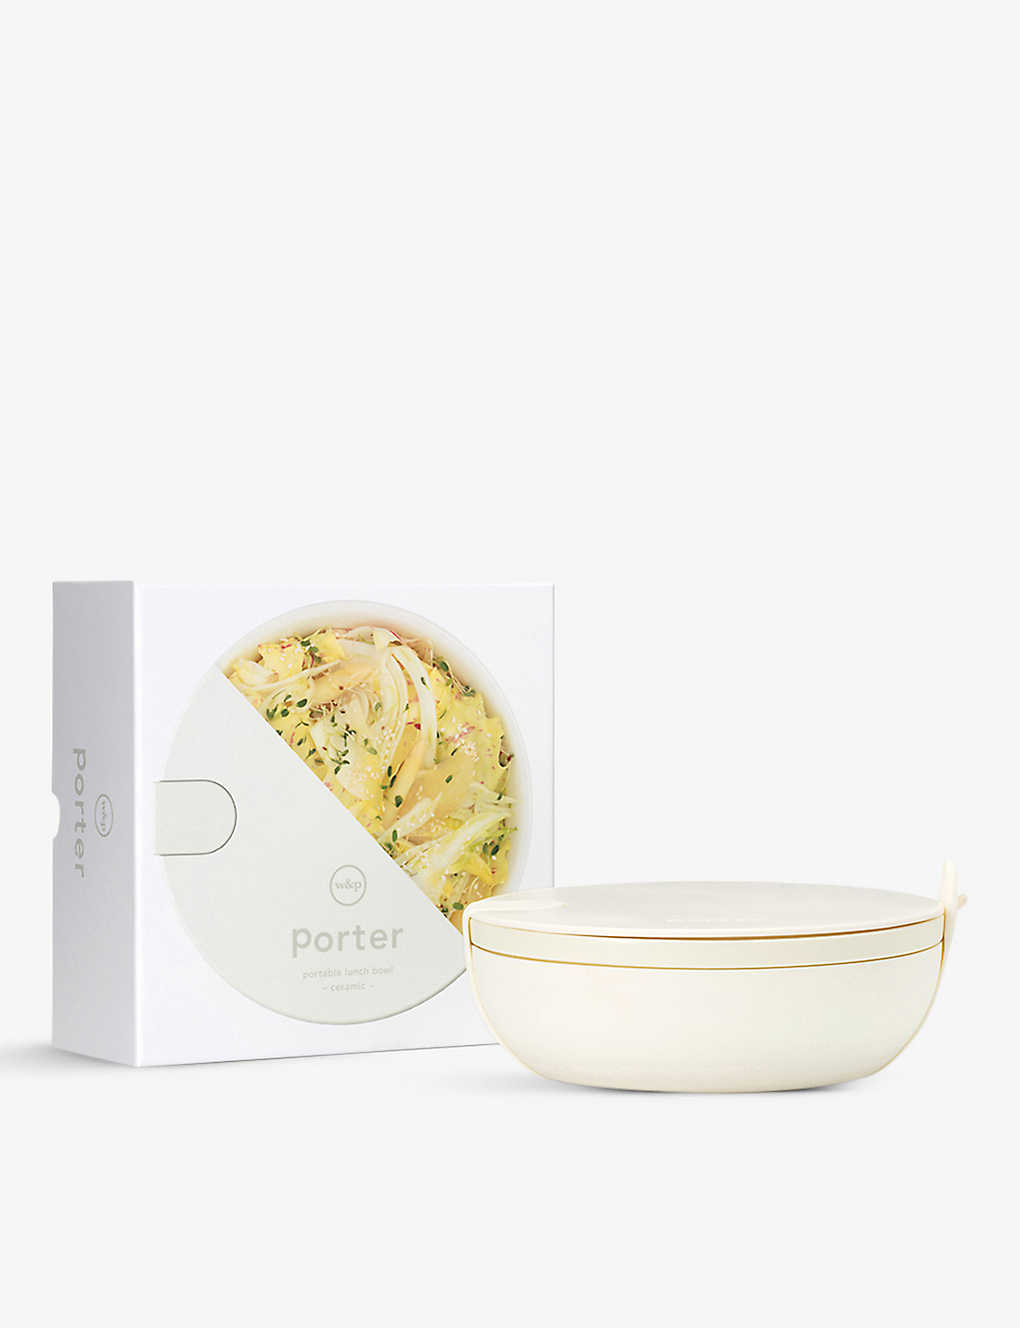 W&p Design The Porter Silicone-wrapped Ceramic Bowl 1l